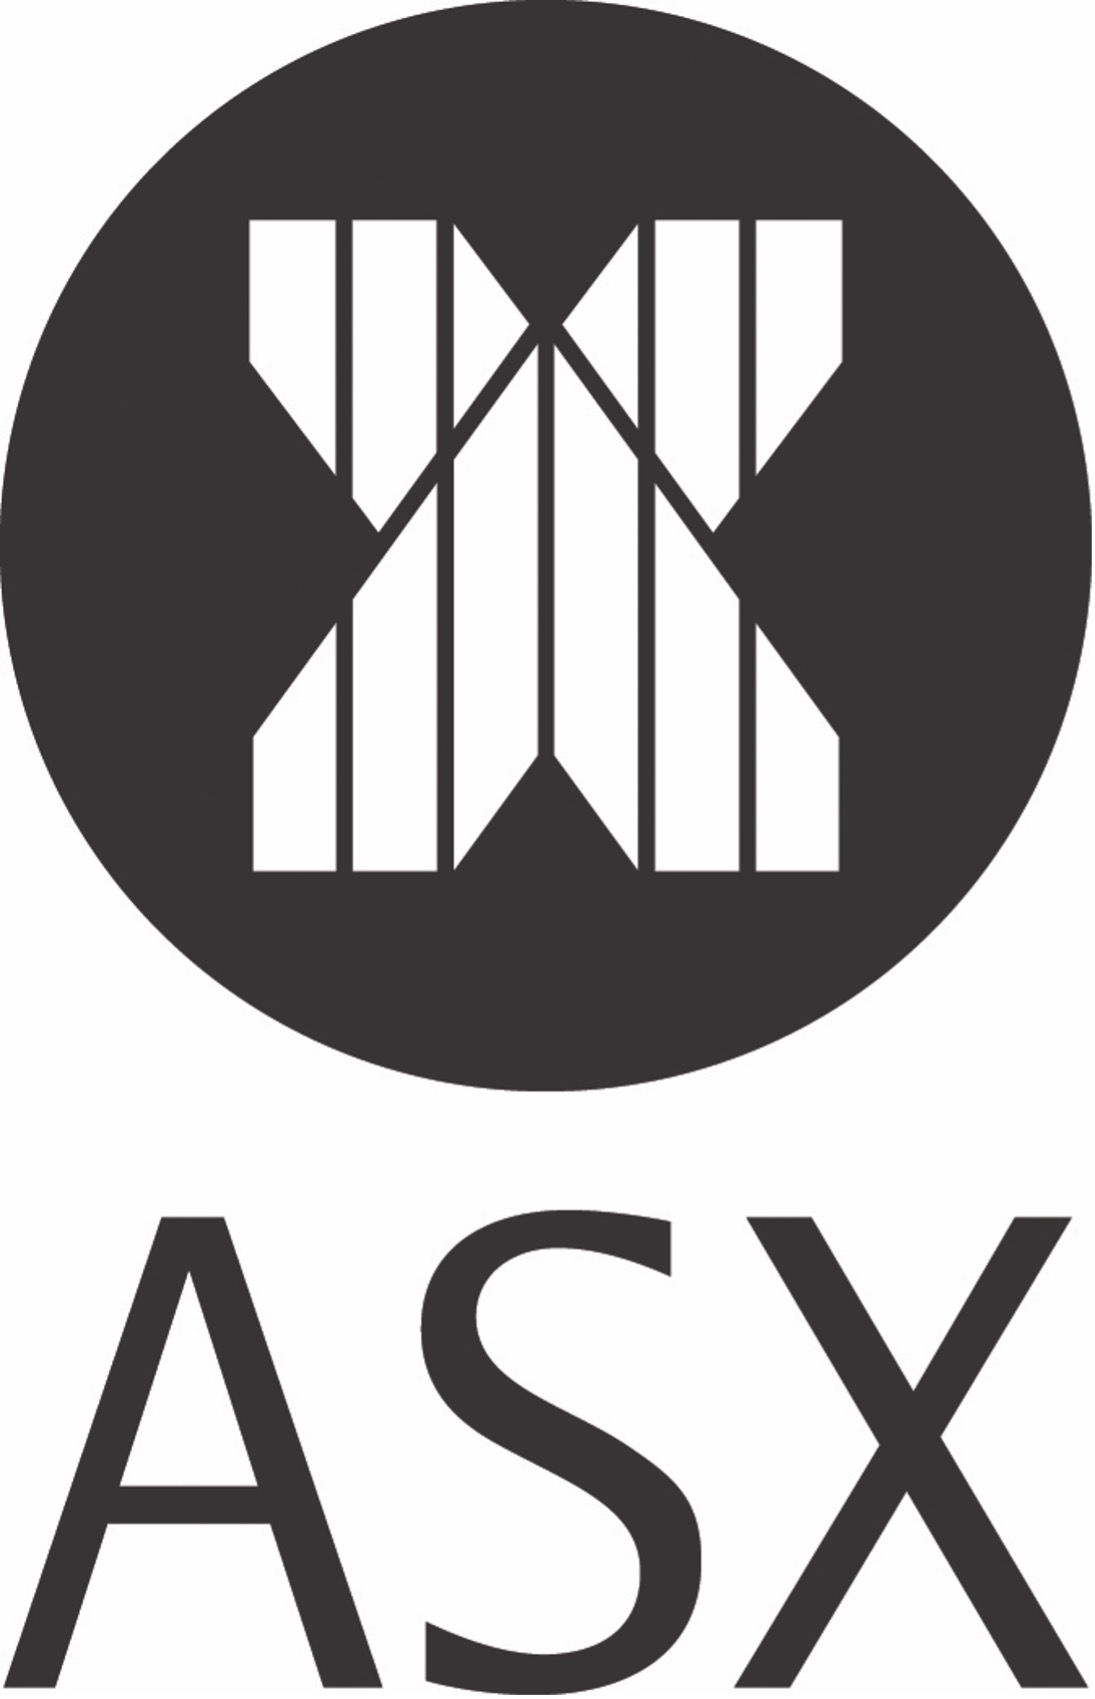 asx logo